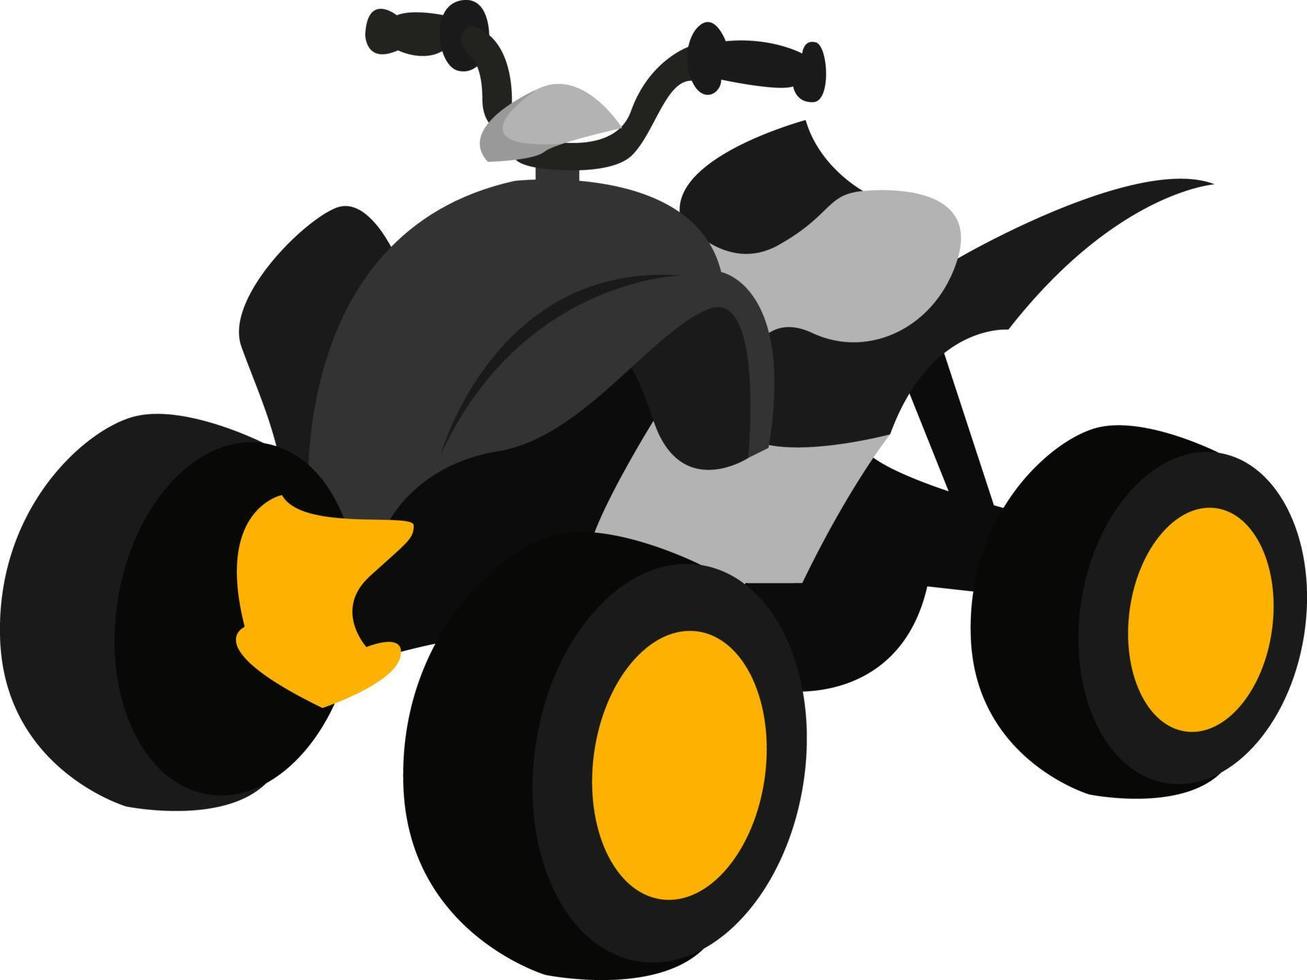 Black ATV, illustration, vector on white background.